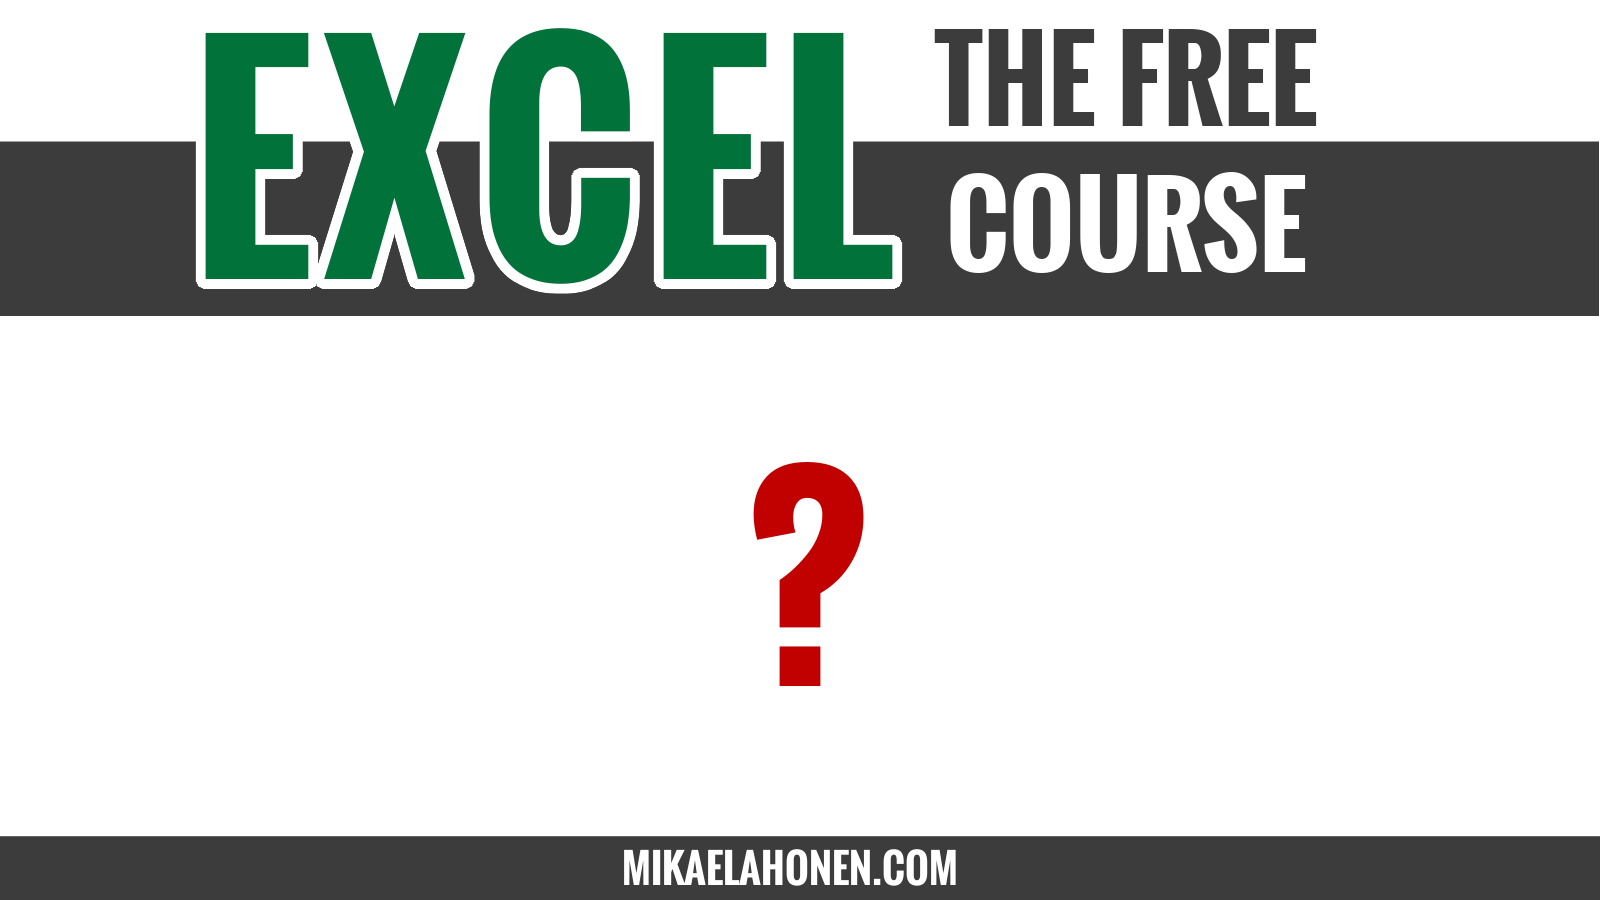 Yhteenveto Nopea katsaus Microsoft Excel-ohjelmistoon. Mikä on työkirja ja laskentataulukko?